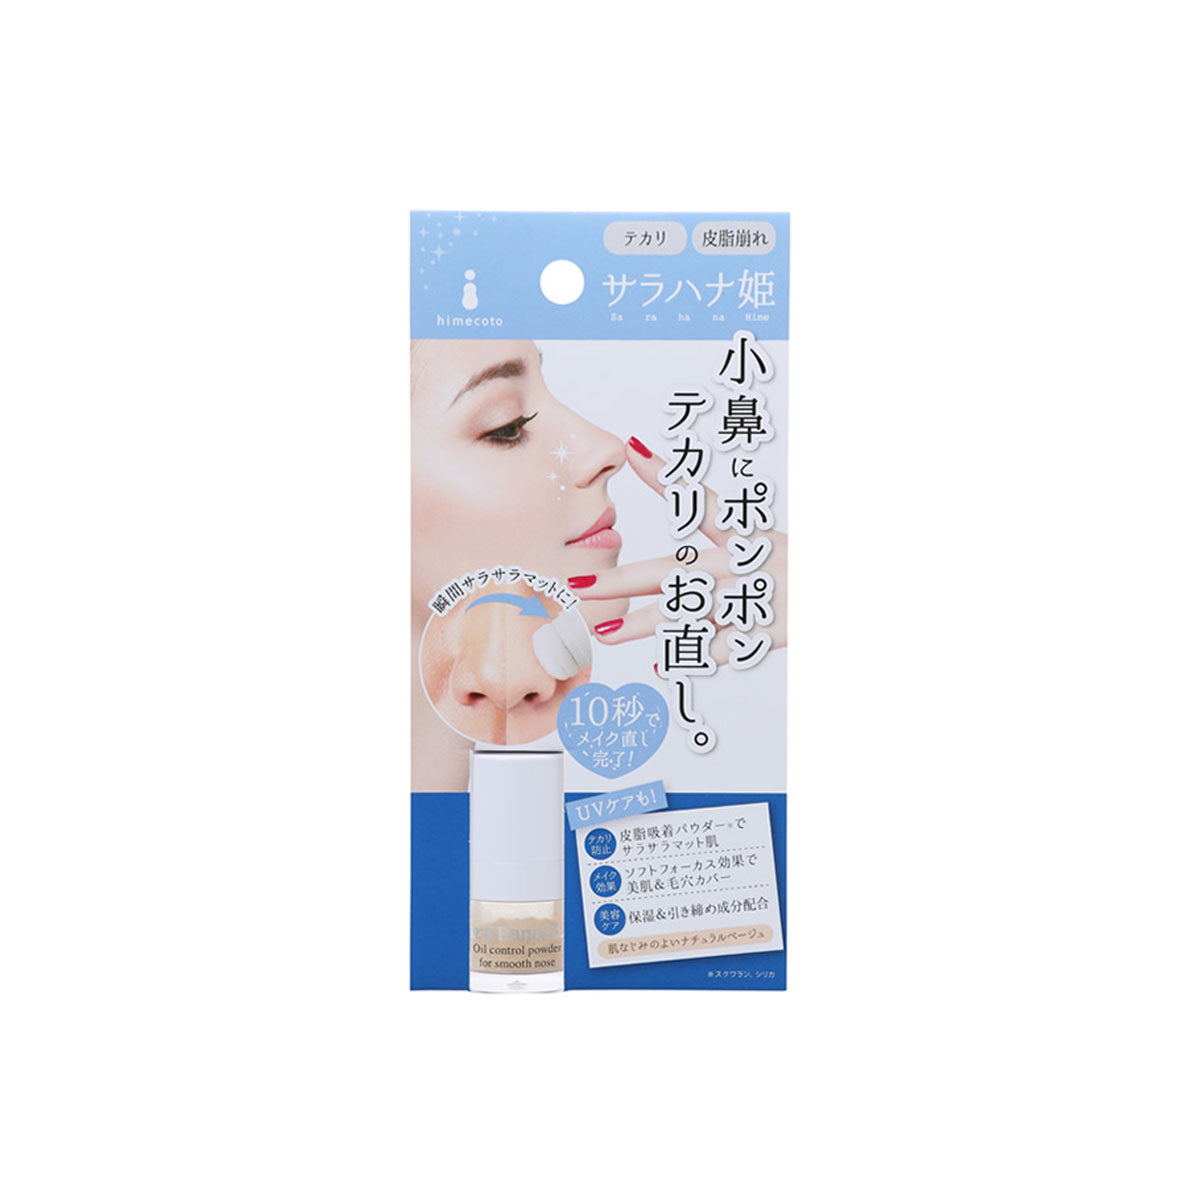 Himecoto Sara Hana Nose Oil Control Powder 1.8g